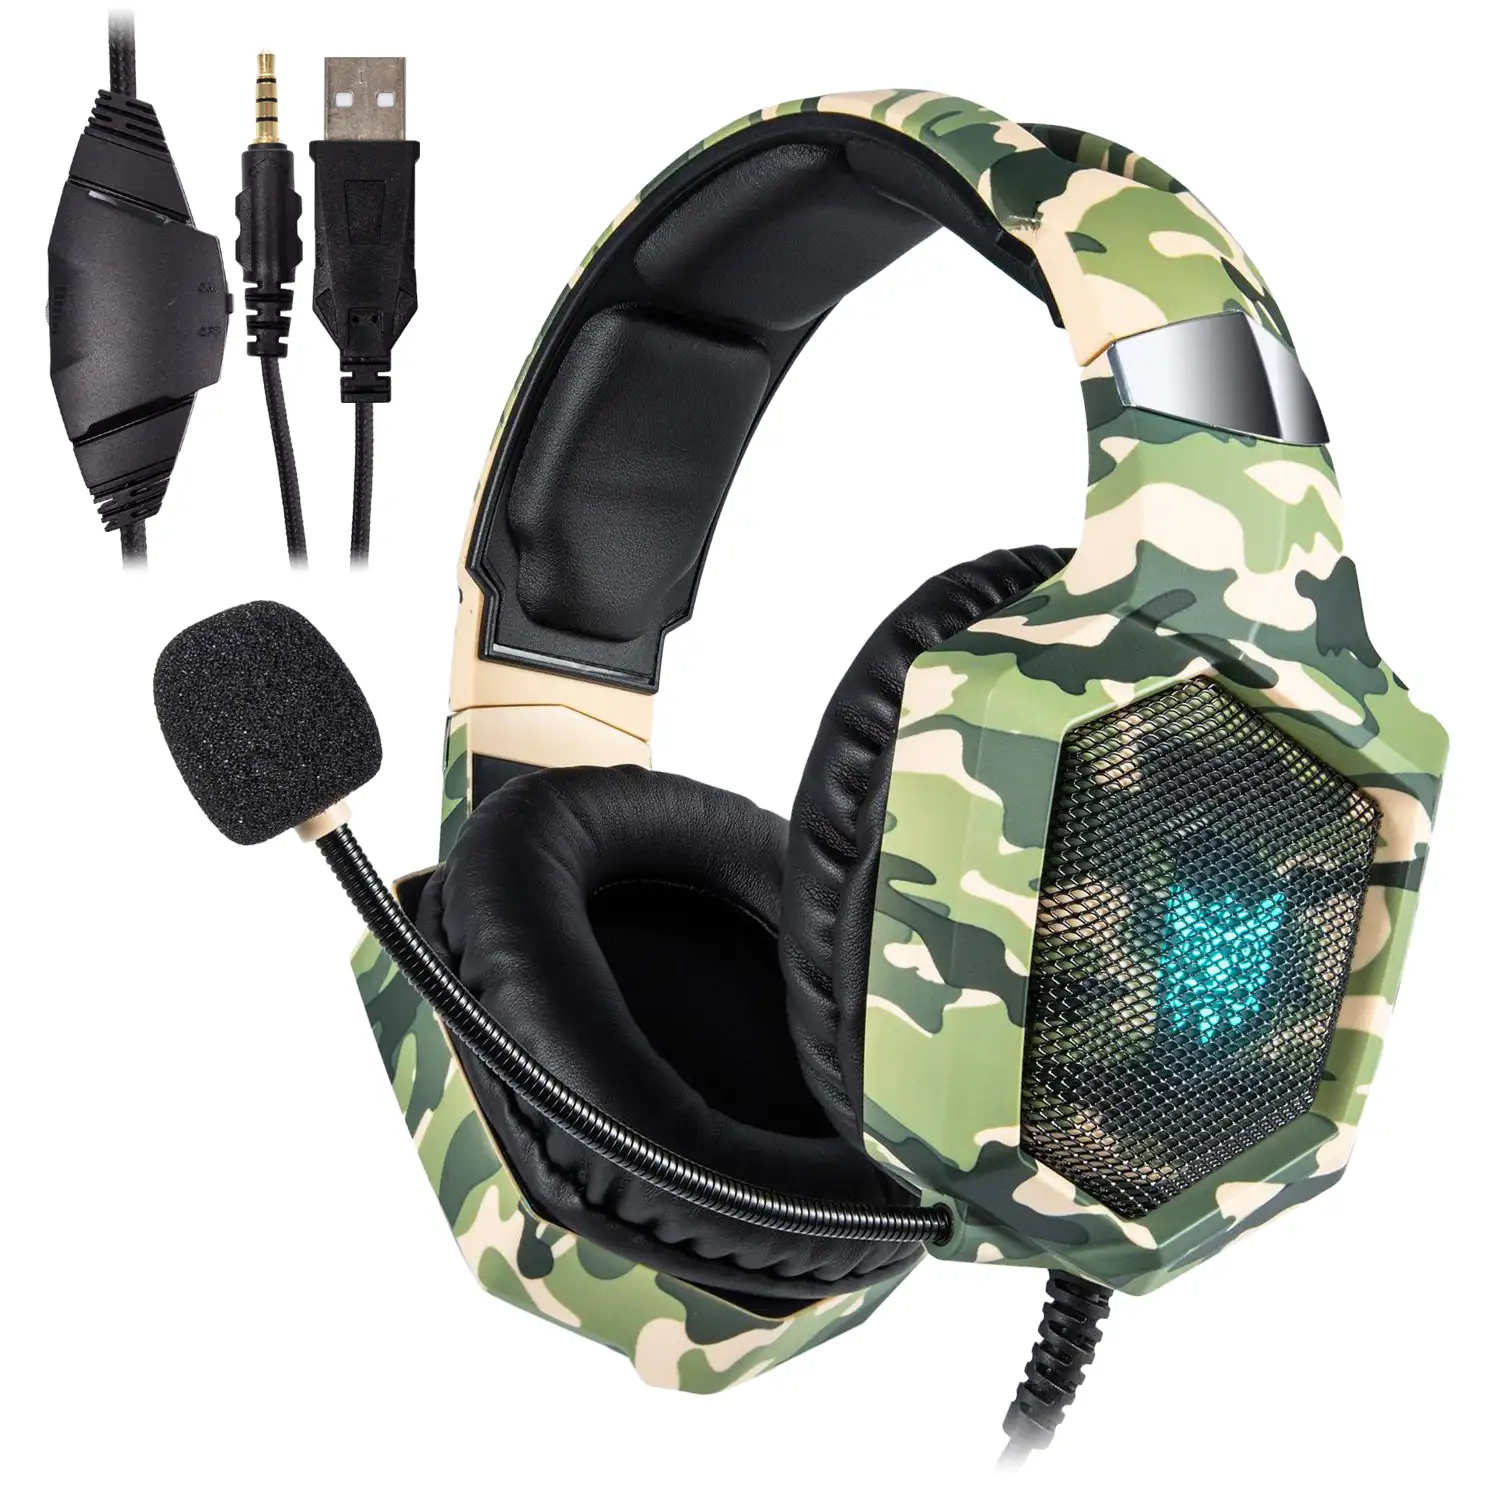 Headset Onikuma K8. Auriculares gaming con micrófono omnidireccional y reducción de ruido. Conexión minijack, luces LED. Compatible con smartphone, PS4, PS5, PC, etc.